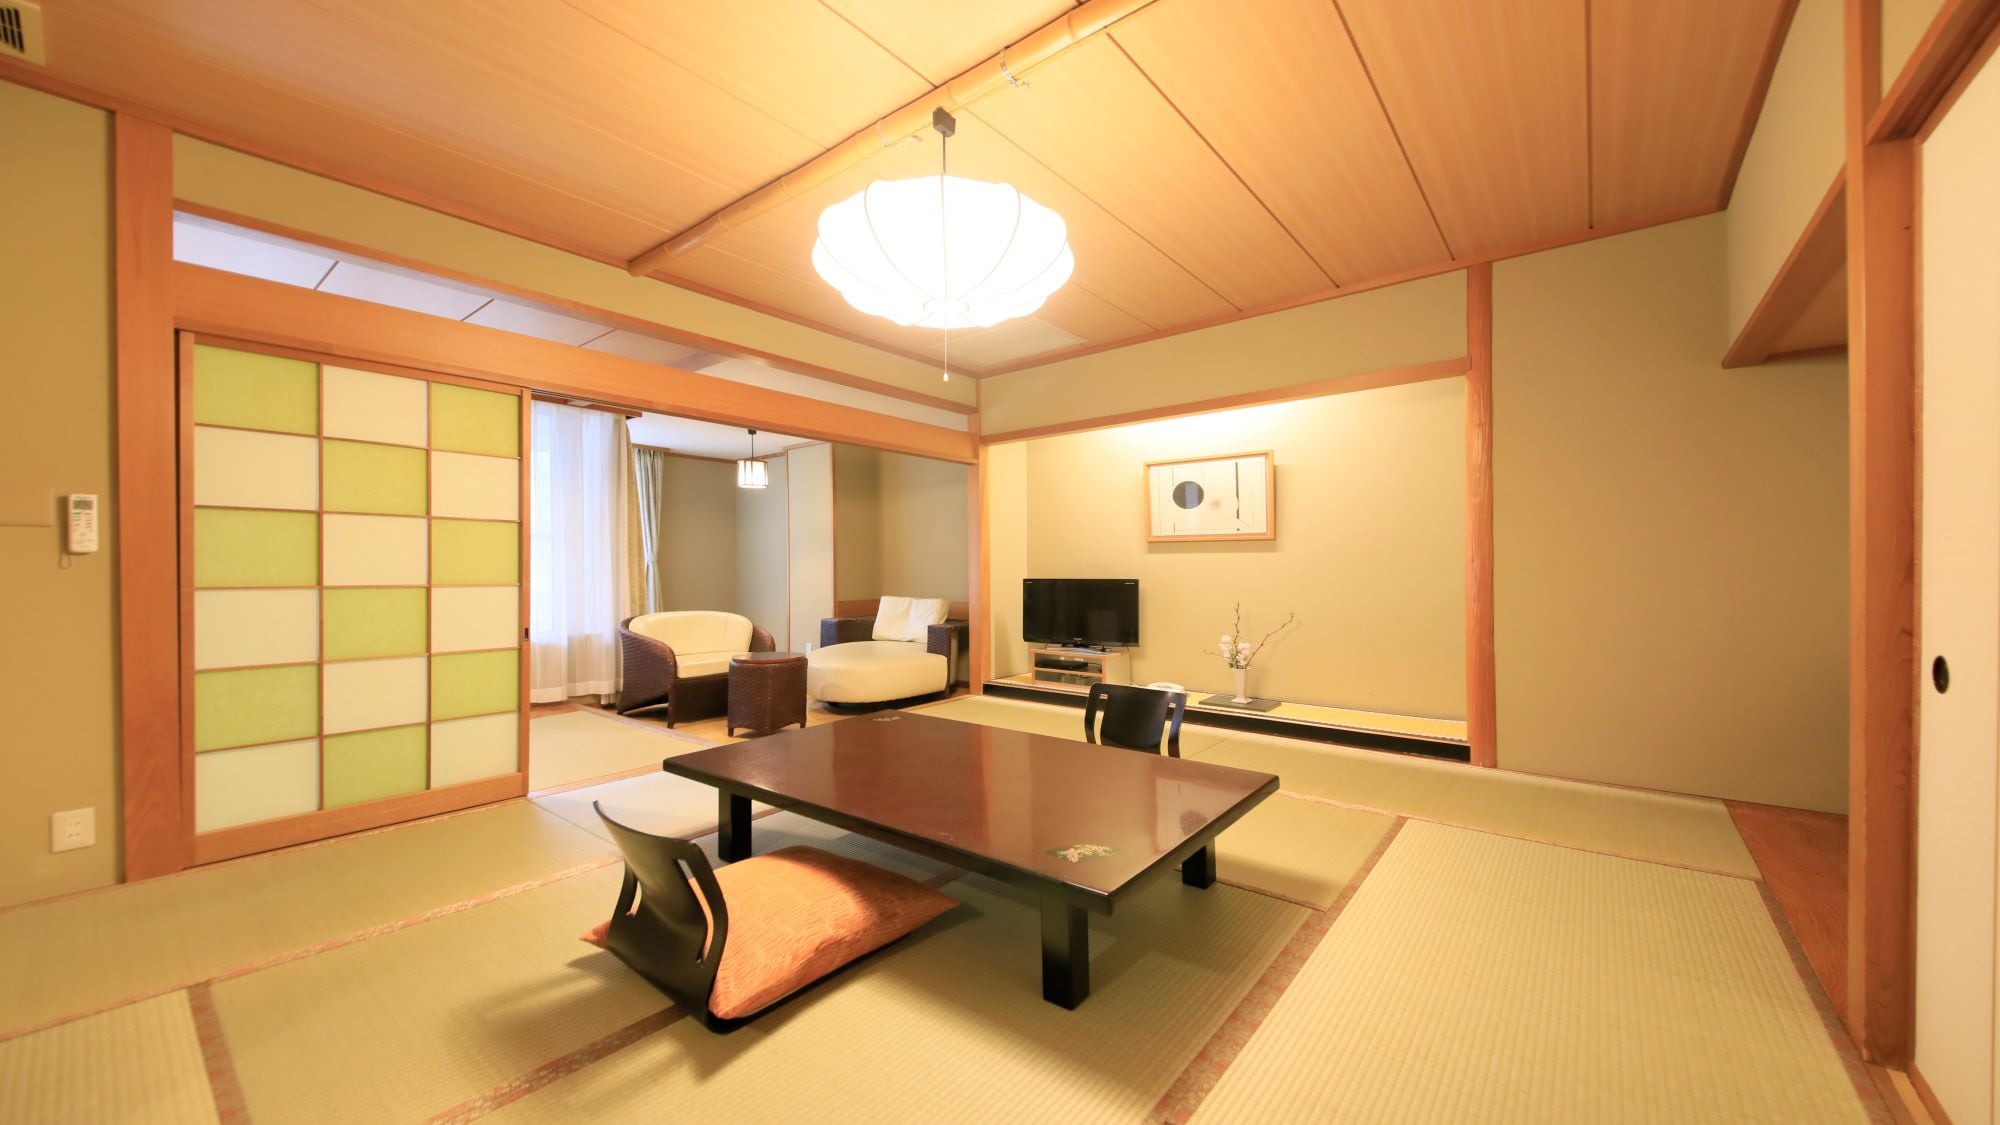 Kamar bergaya Jepang yang sedikit lebih besar dengan 10 hingga 15 tikar tatami + pelek lebar (contoh) dapat digunakan hingga 6 orang.